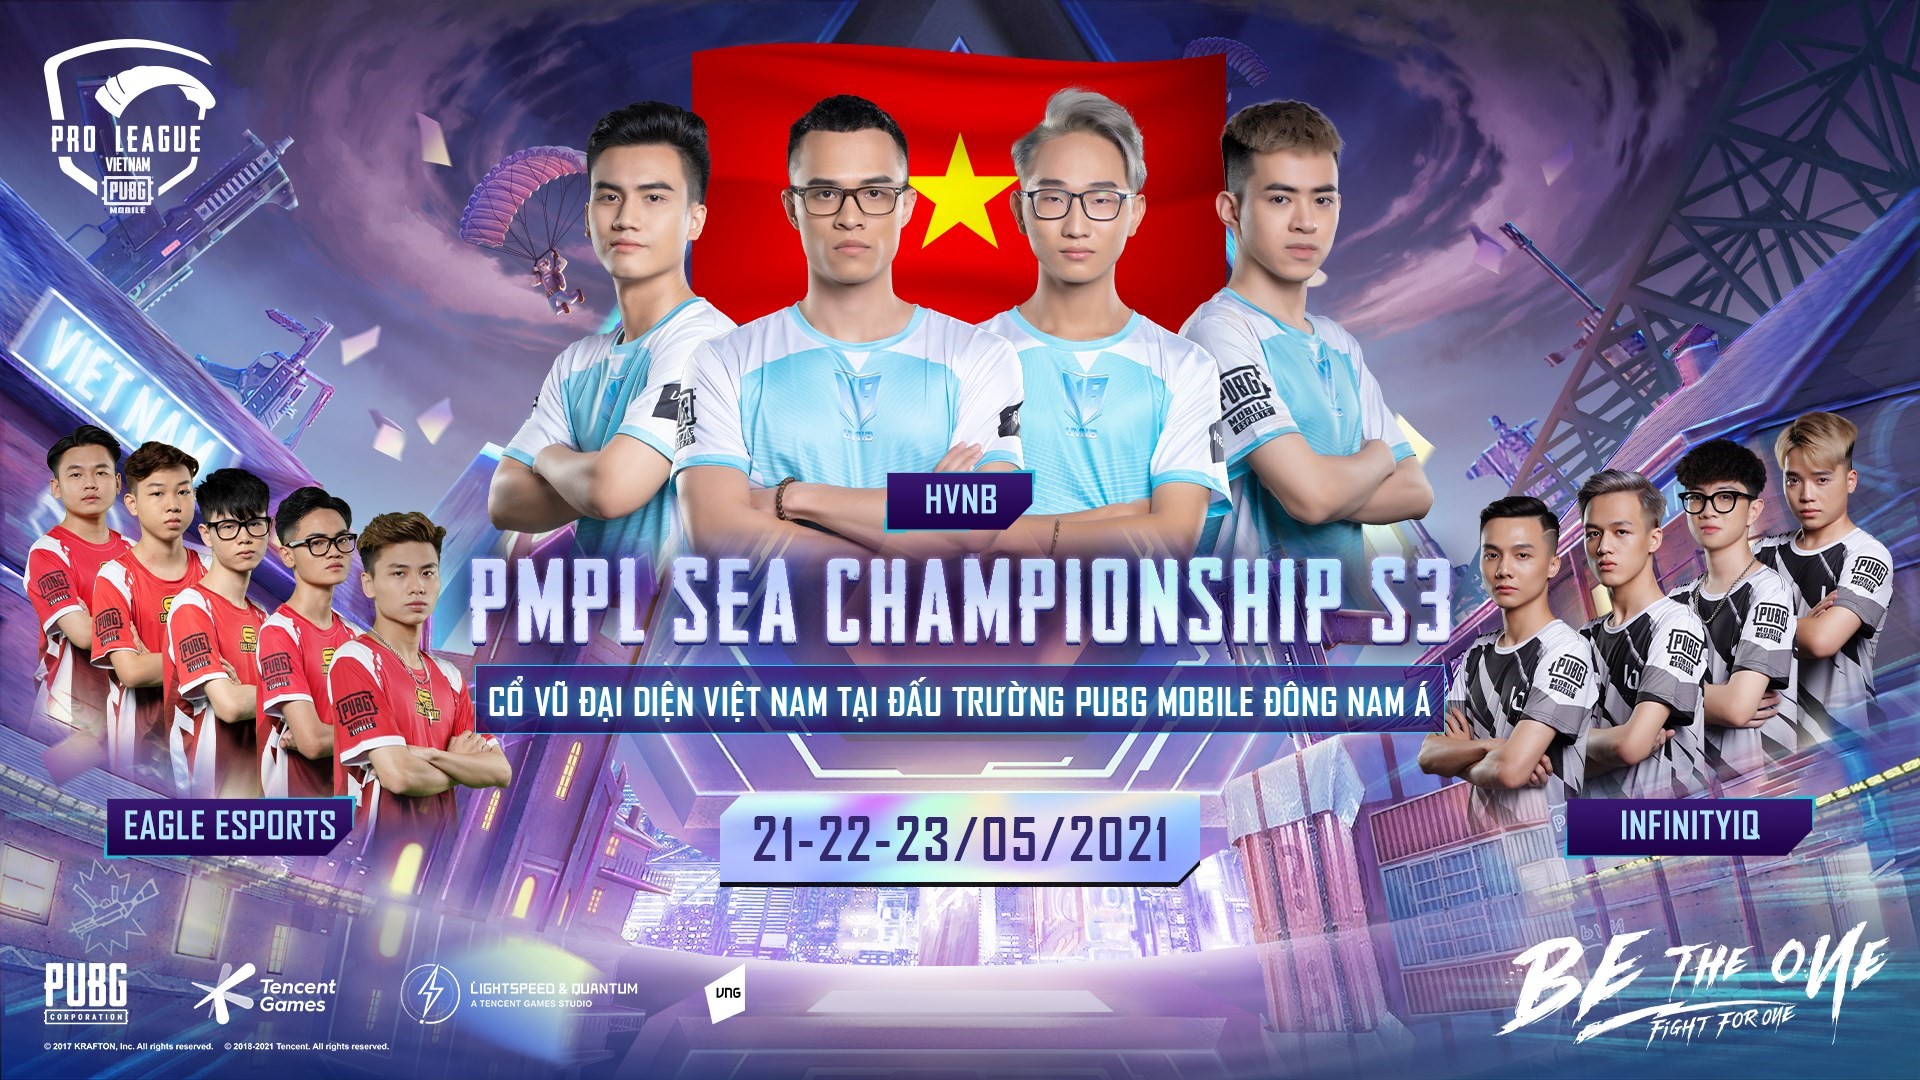 HVNB, Infinity IQ VÀ Eagle Esports đại diện Việt Nam tranh tài tại PMPL SEA Championship S3 - Ảnh 2